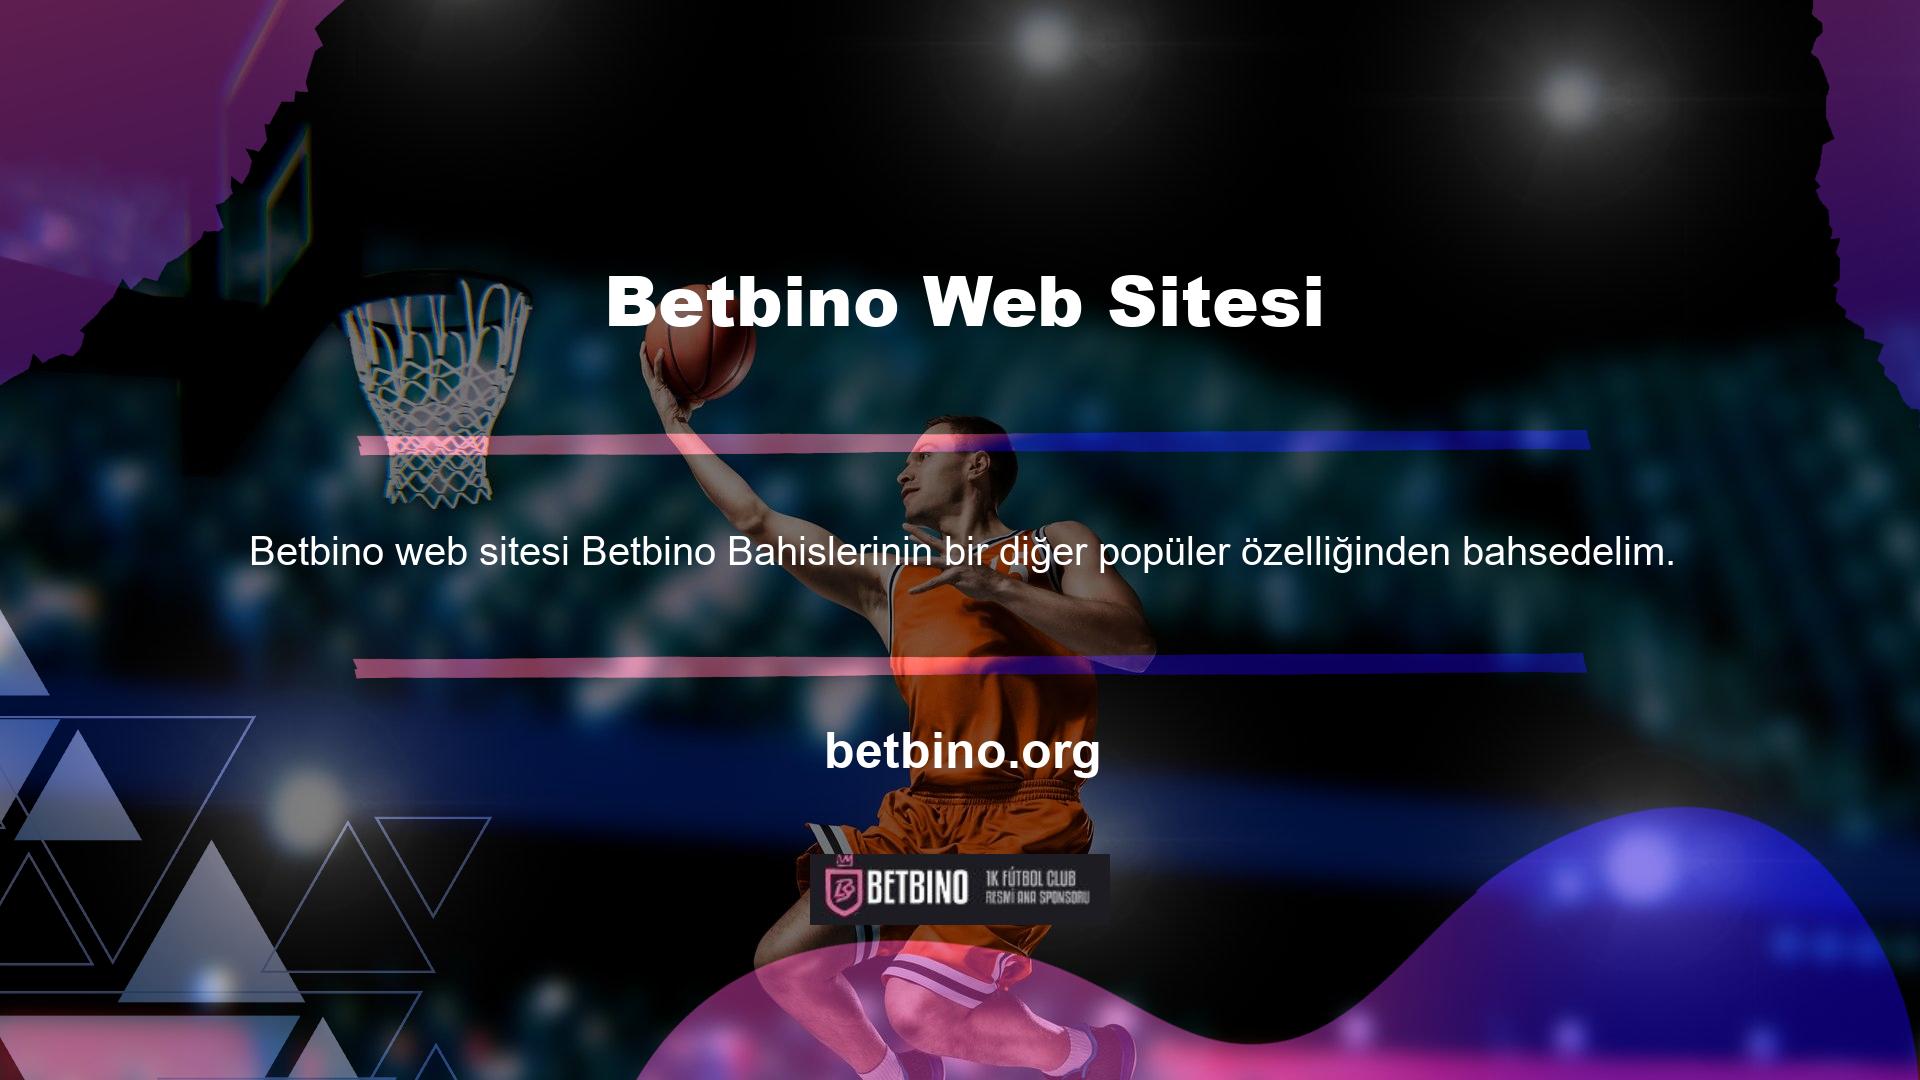 Bir casinoda veya canlı bir casino oyununda kaybederseniz, Betbino bahis sitesi sizi korur